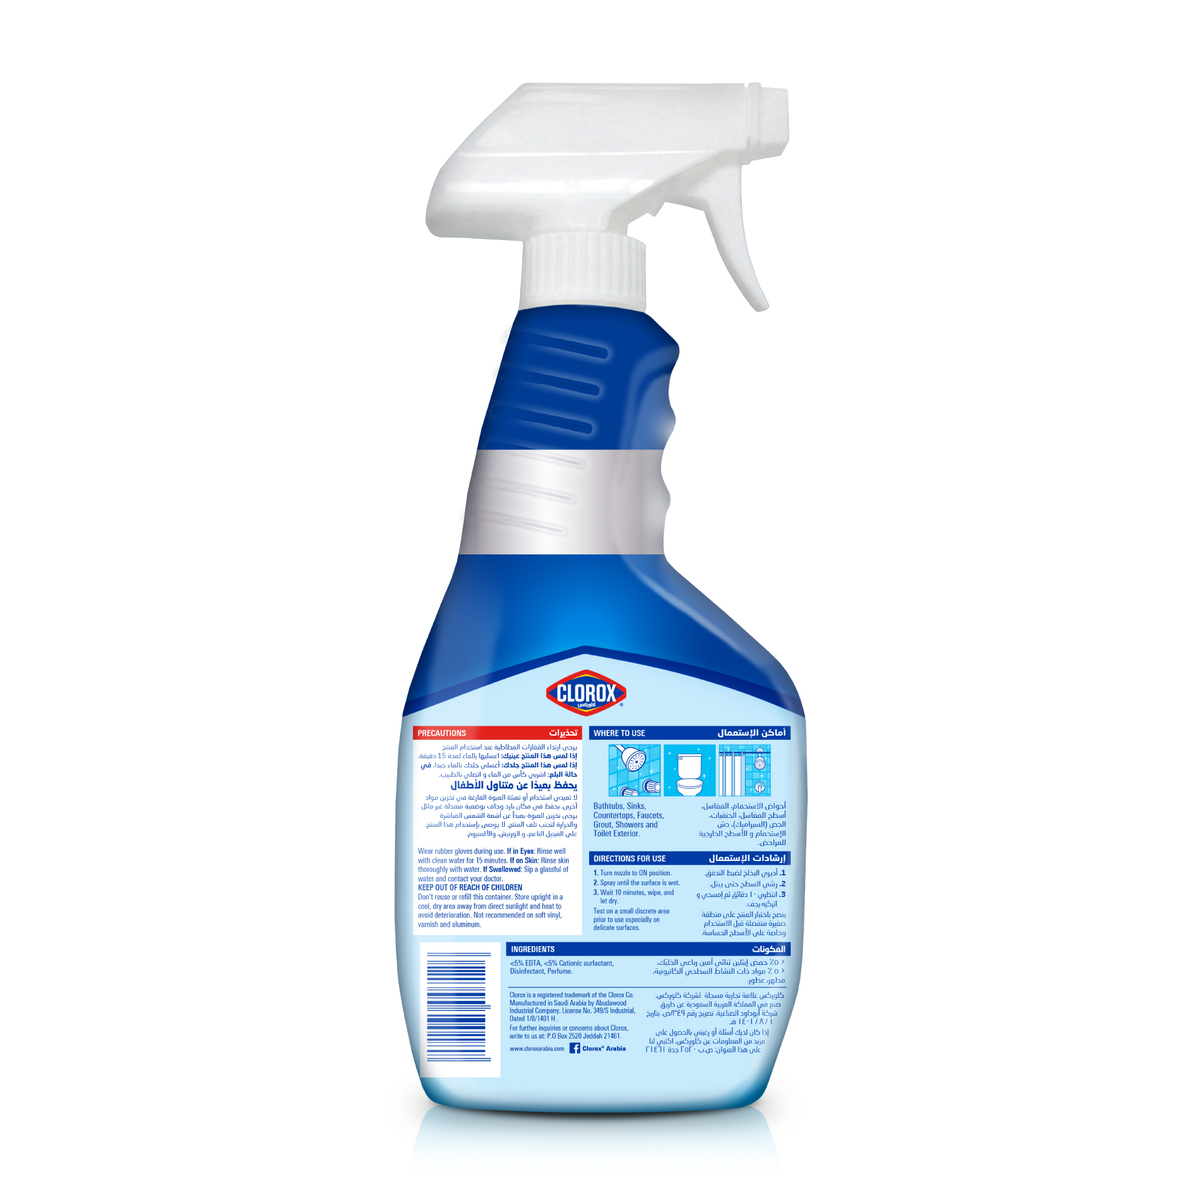 Clorox Bathroom Spray Cleaner Bleach Free 500 ml